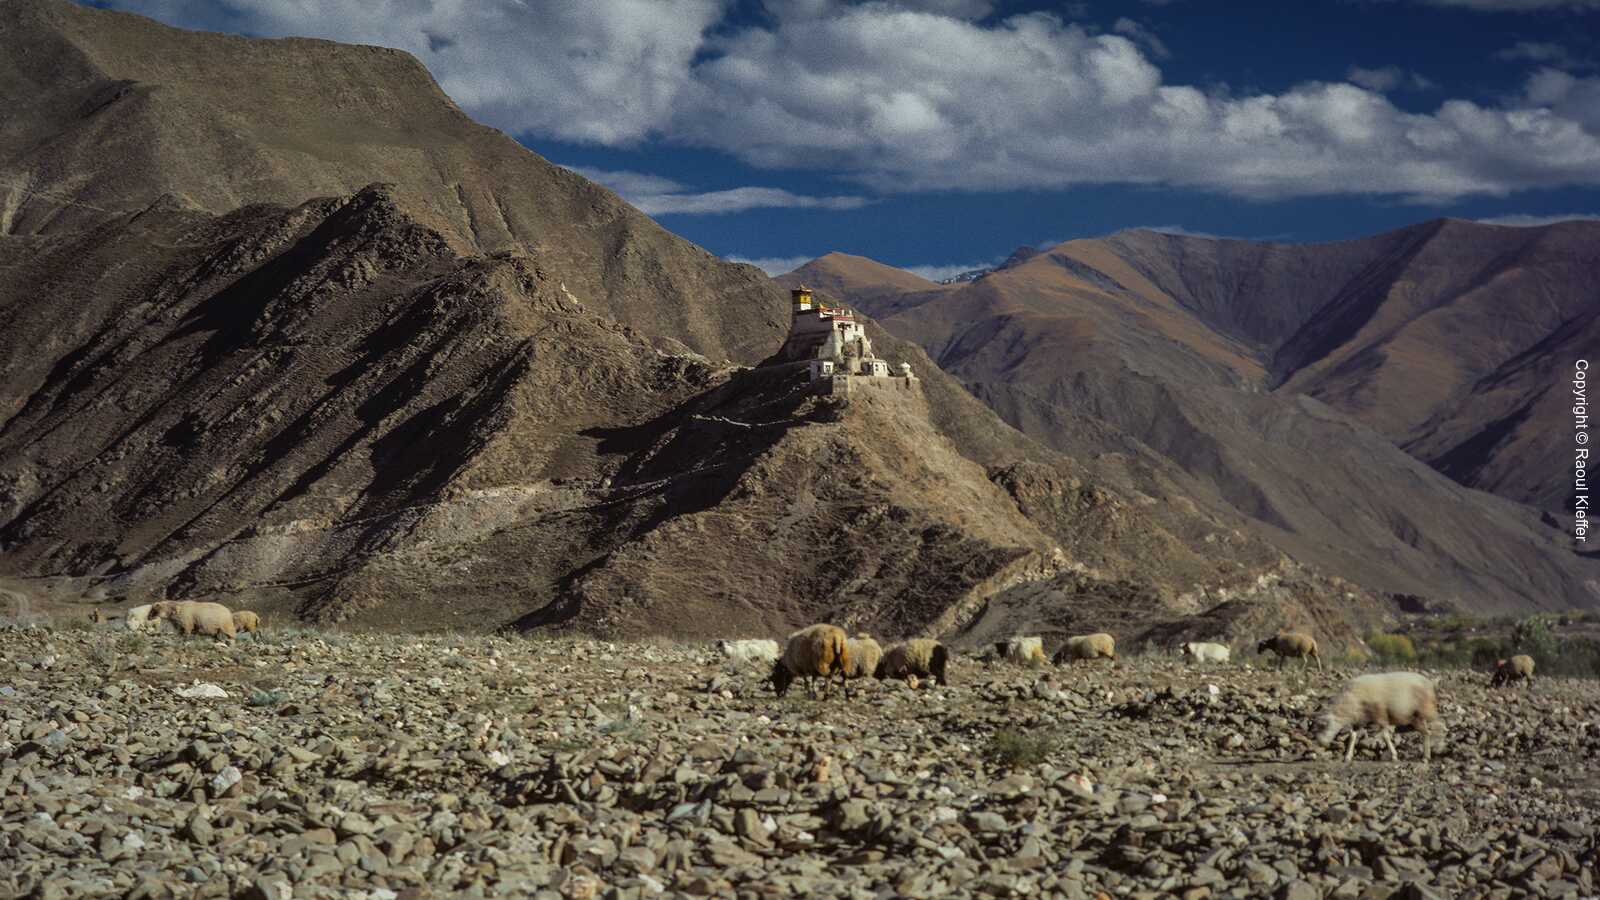 Other Monasteries in Tibet